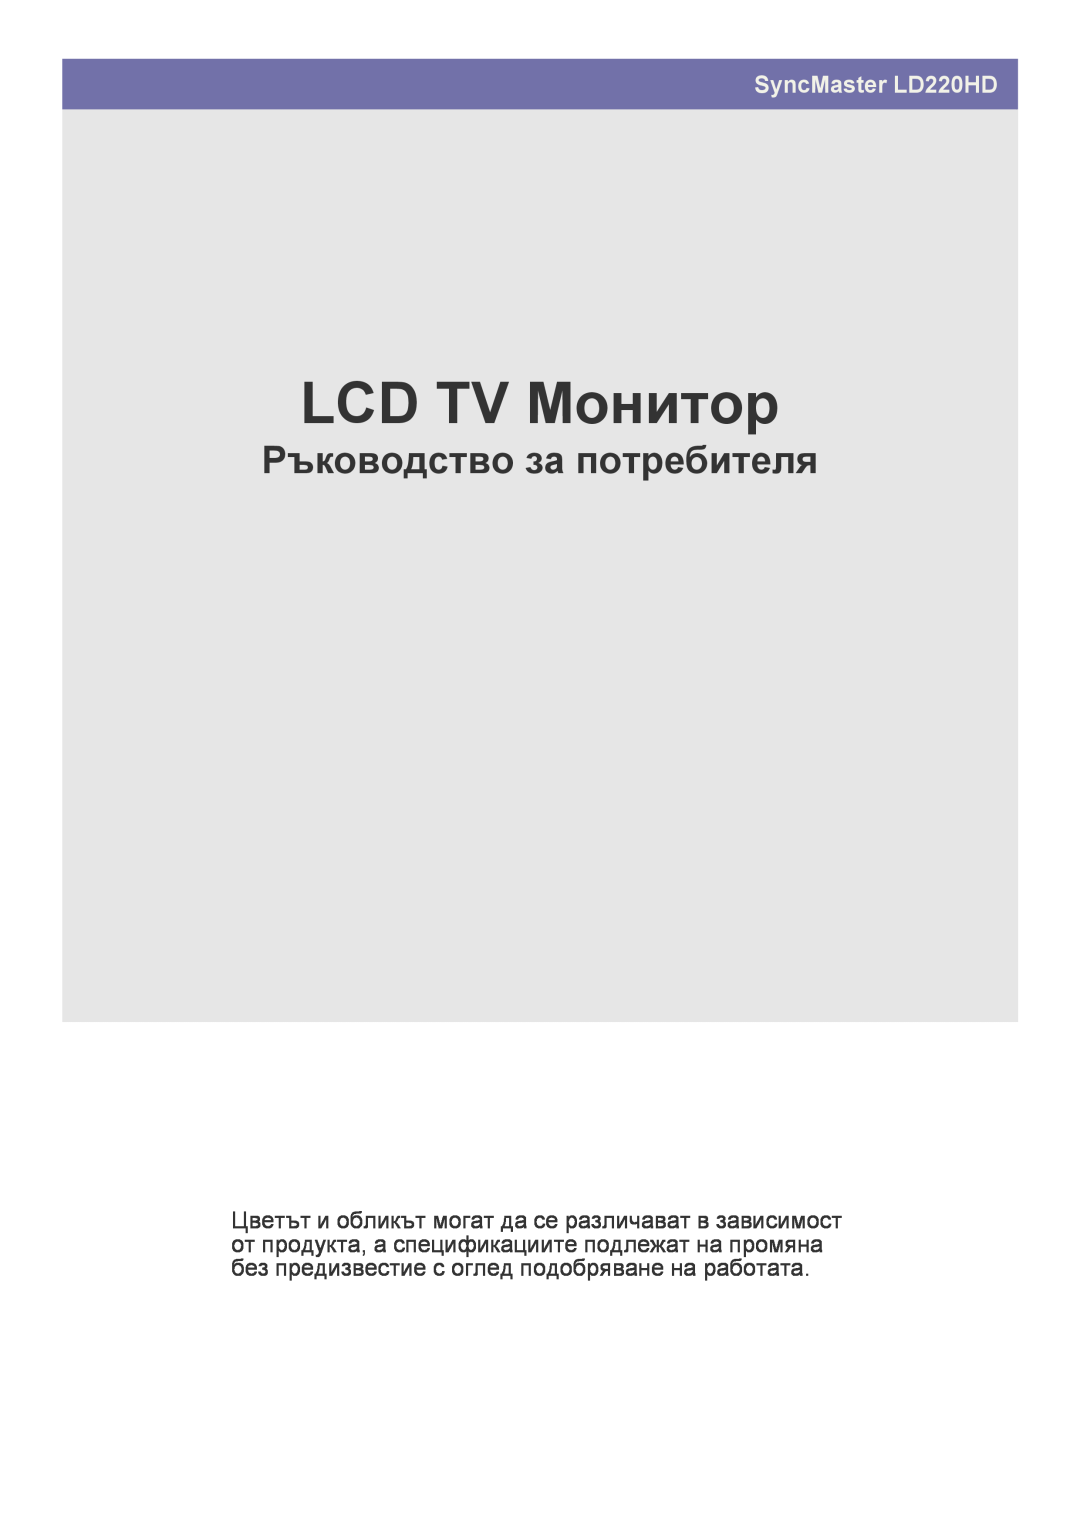 Samsung LS22FMDGF/EN manual Monitor LCD TV, Uživatelská příručka, SyncMaster LD220HD 